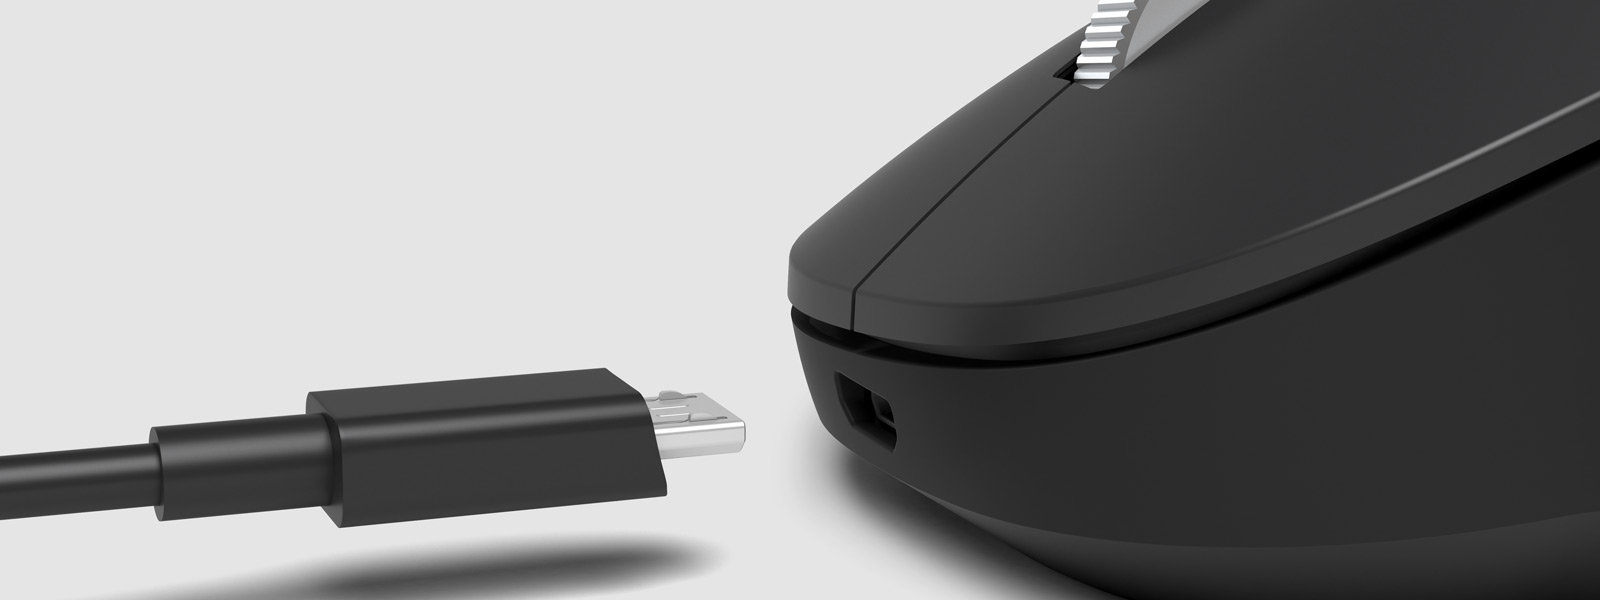 今年も話題の Microsoft Surface Precision Mouse